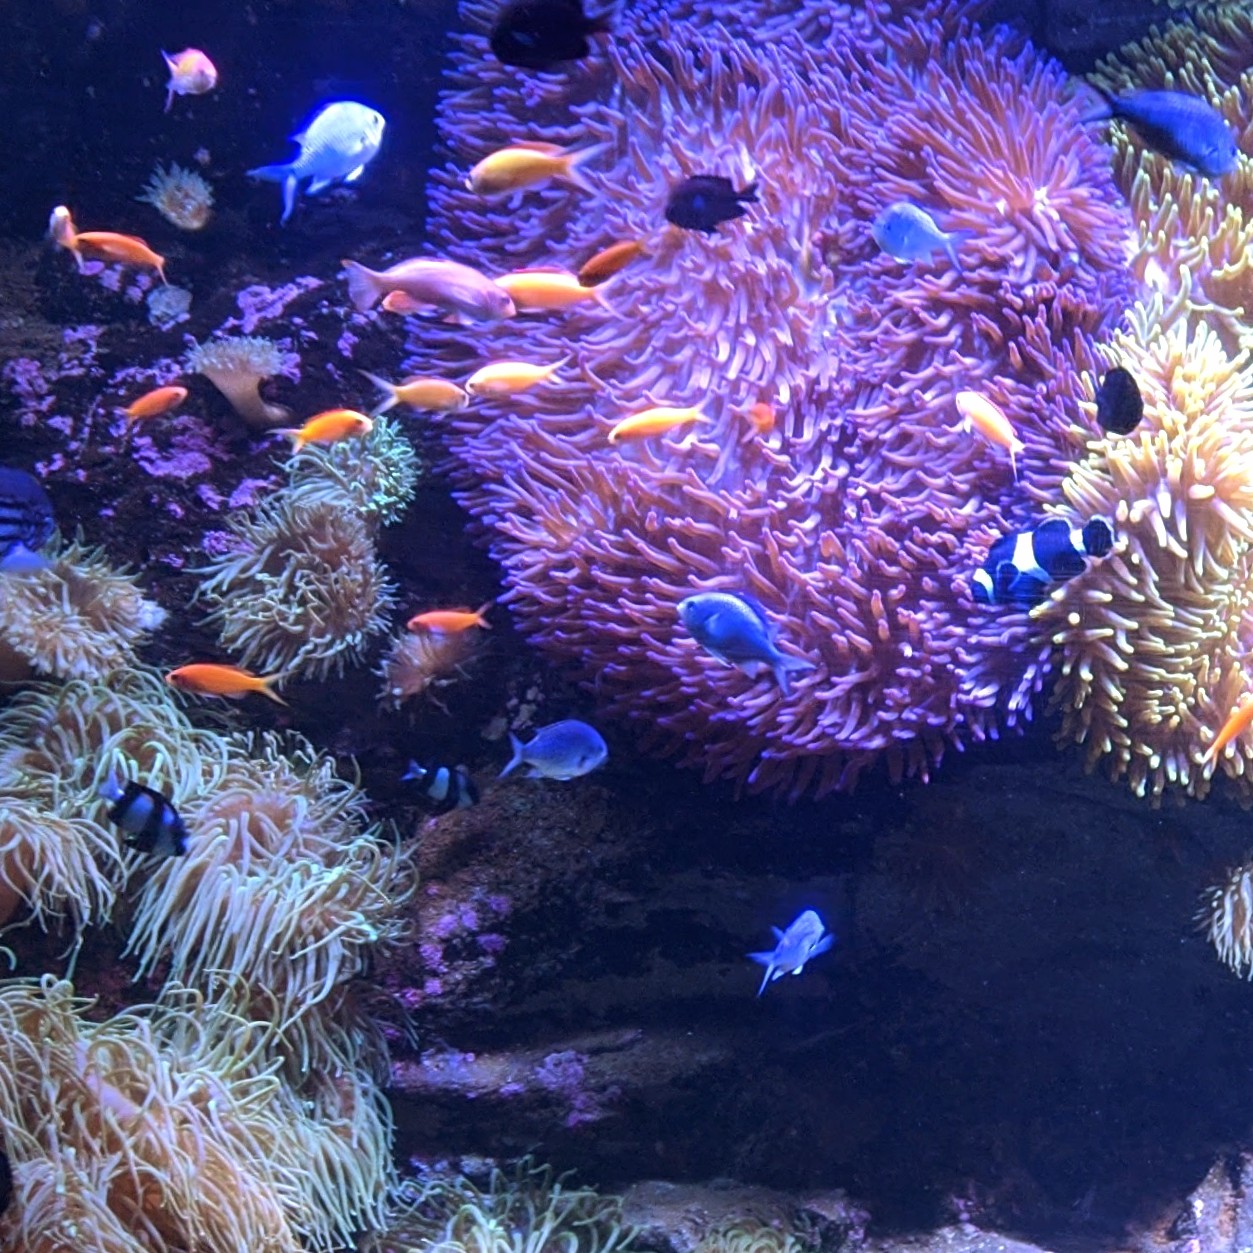 Tropical fish in the Sydney Aquarium